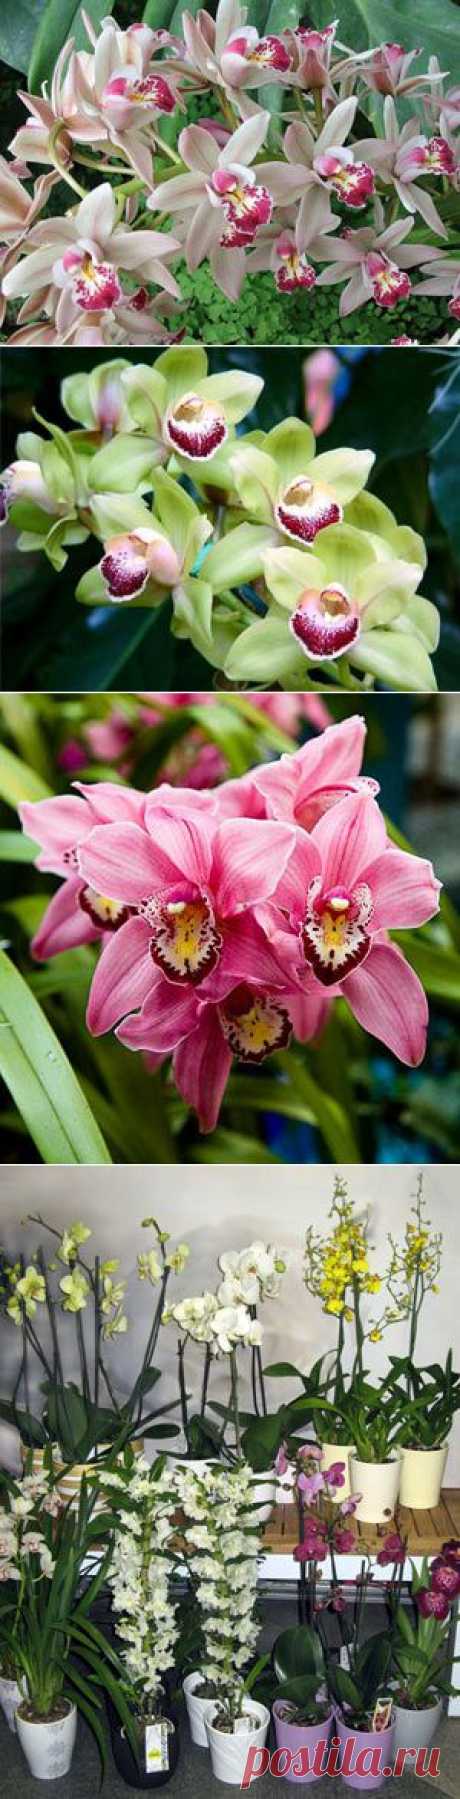 Орхидея: уход в домашних условиях - Комнатные растения, уход, энциклопедия растений, домашние цветы, фото, названия